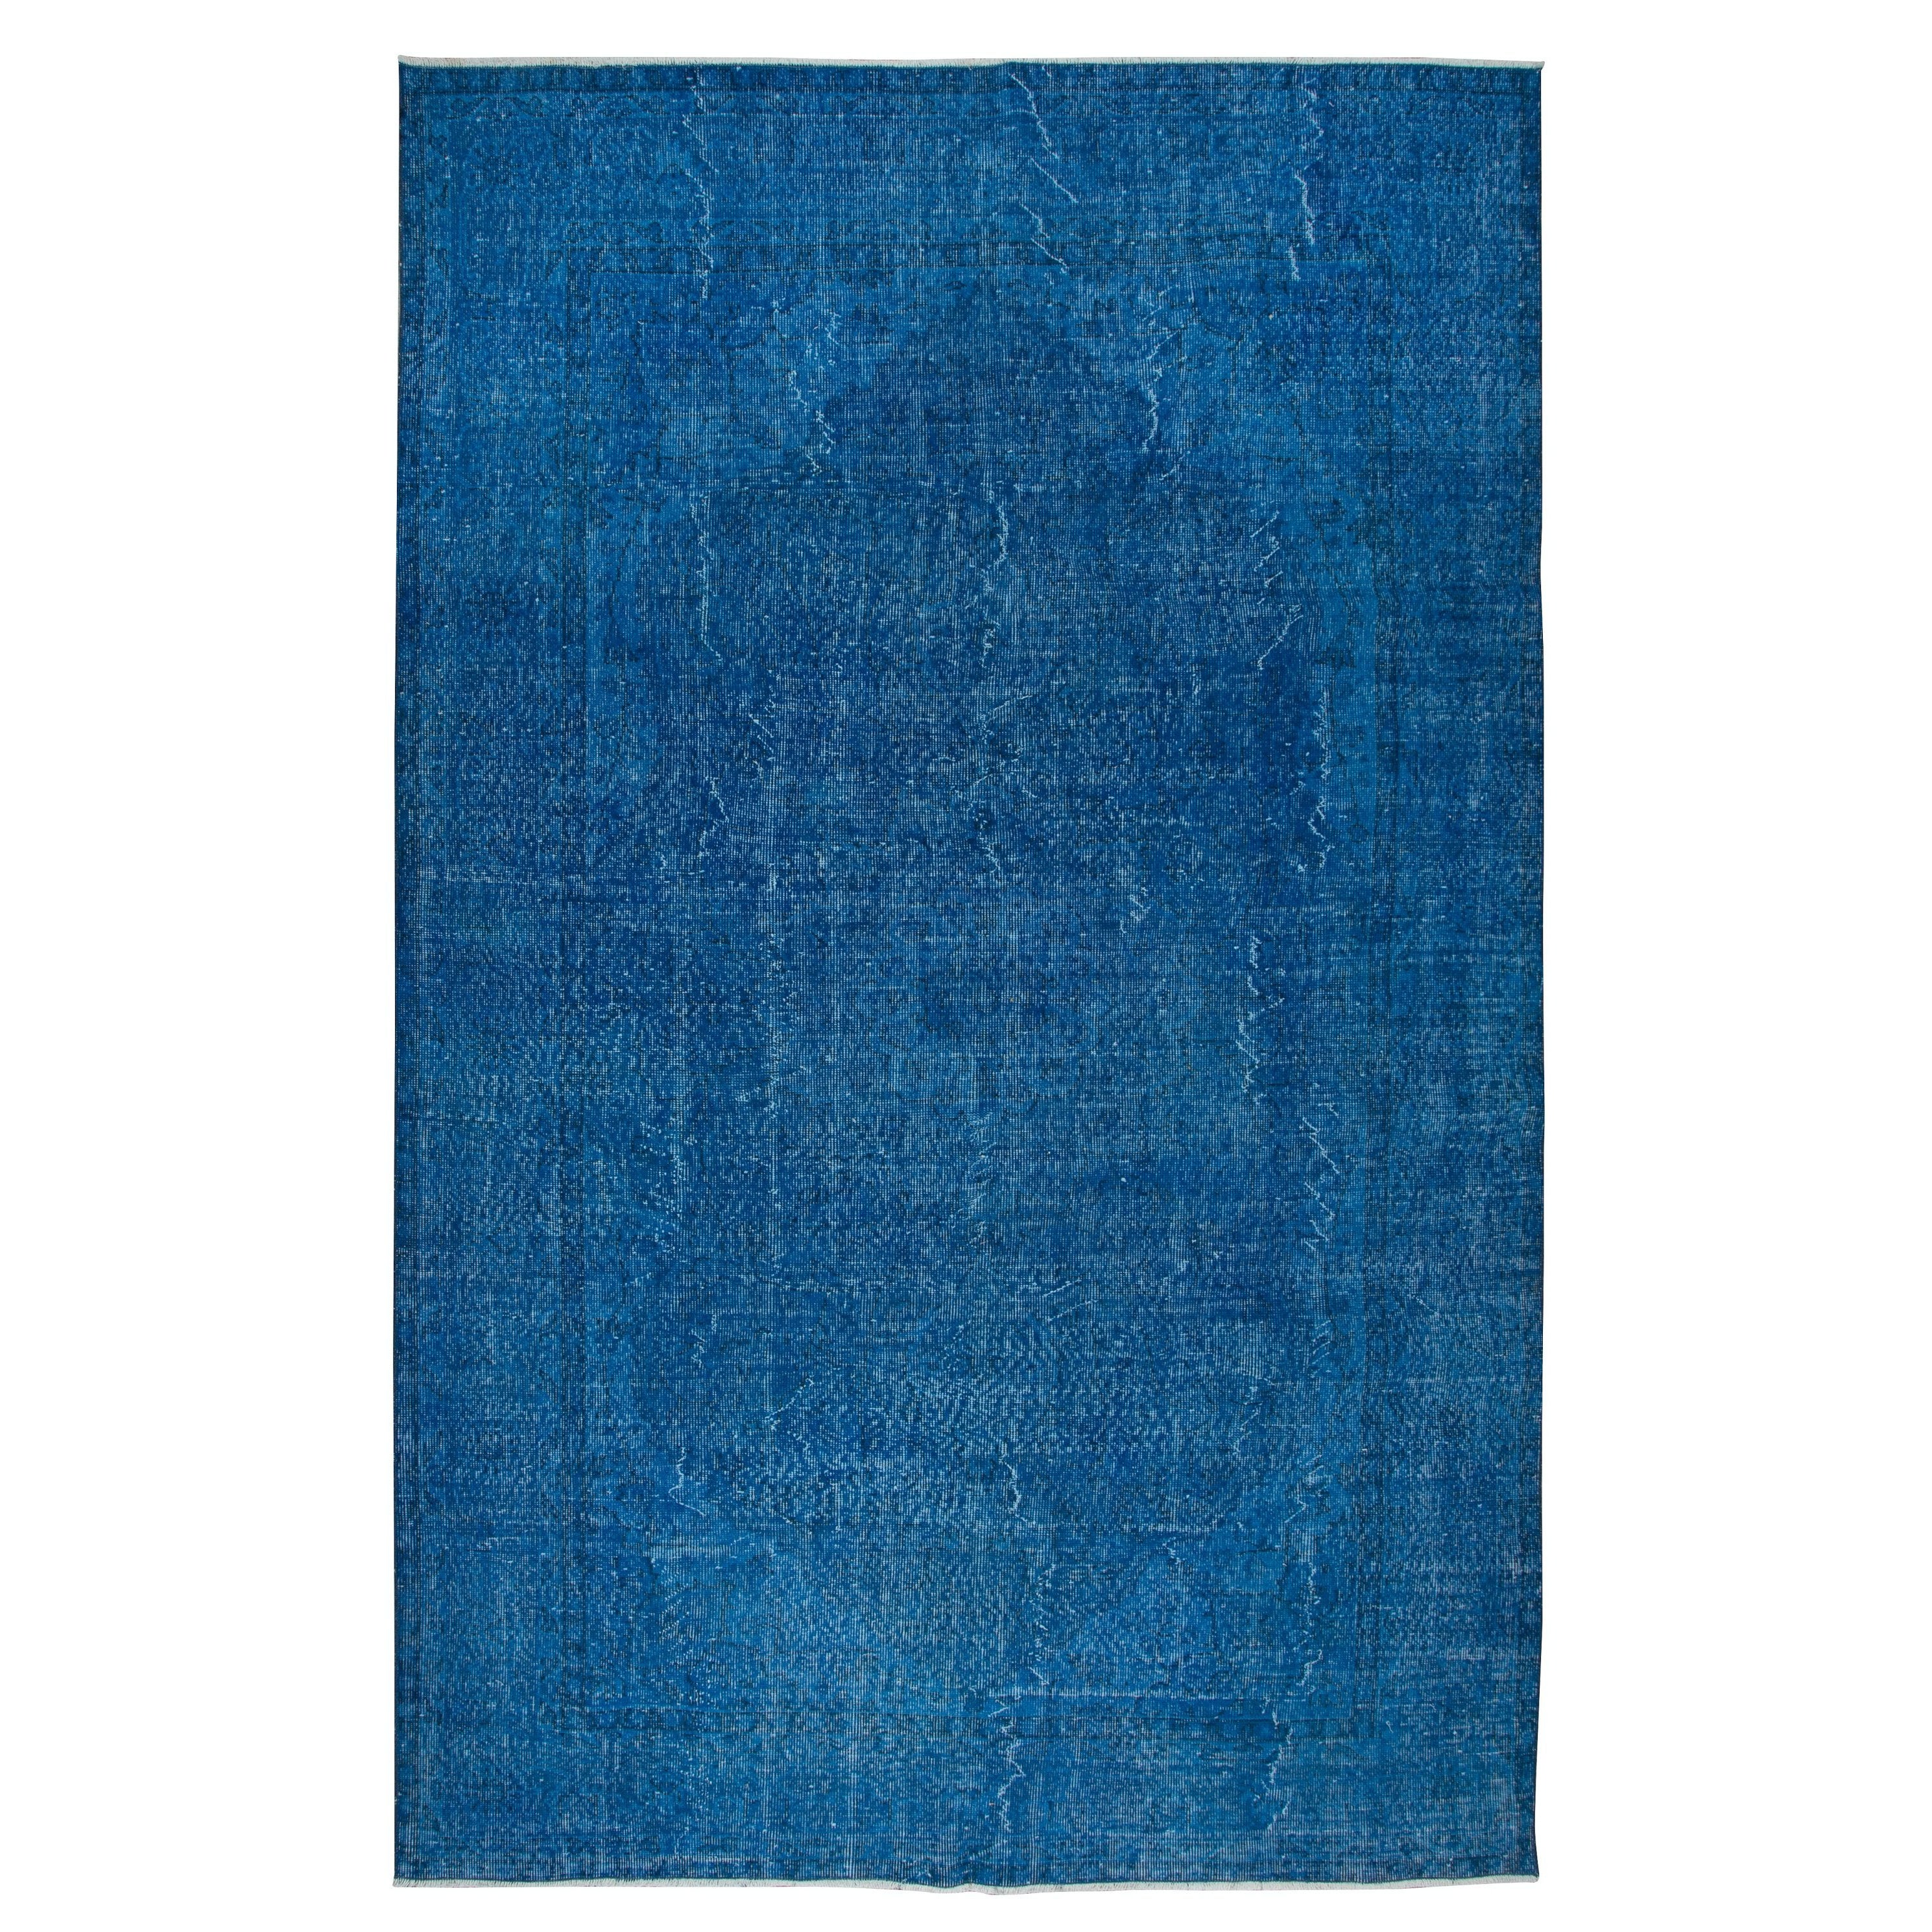 7x10.3 Ft Plain Blue Handgefertigter türkischer Teppich für Wohnzimmer, Schlafzimmer, Esszimmer